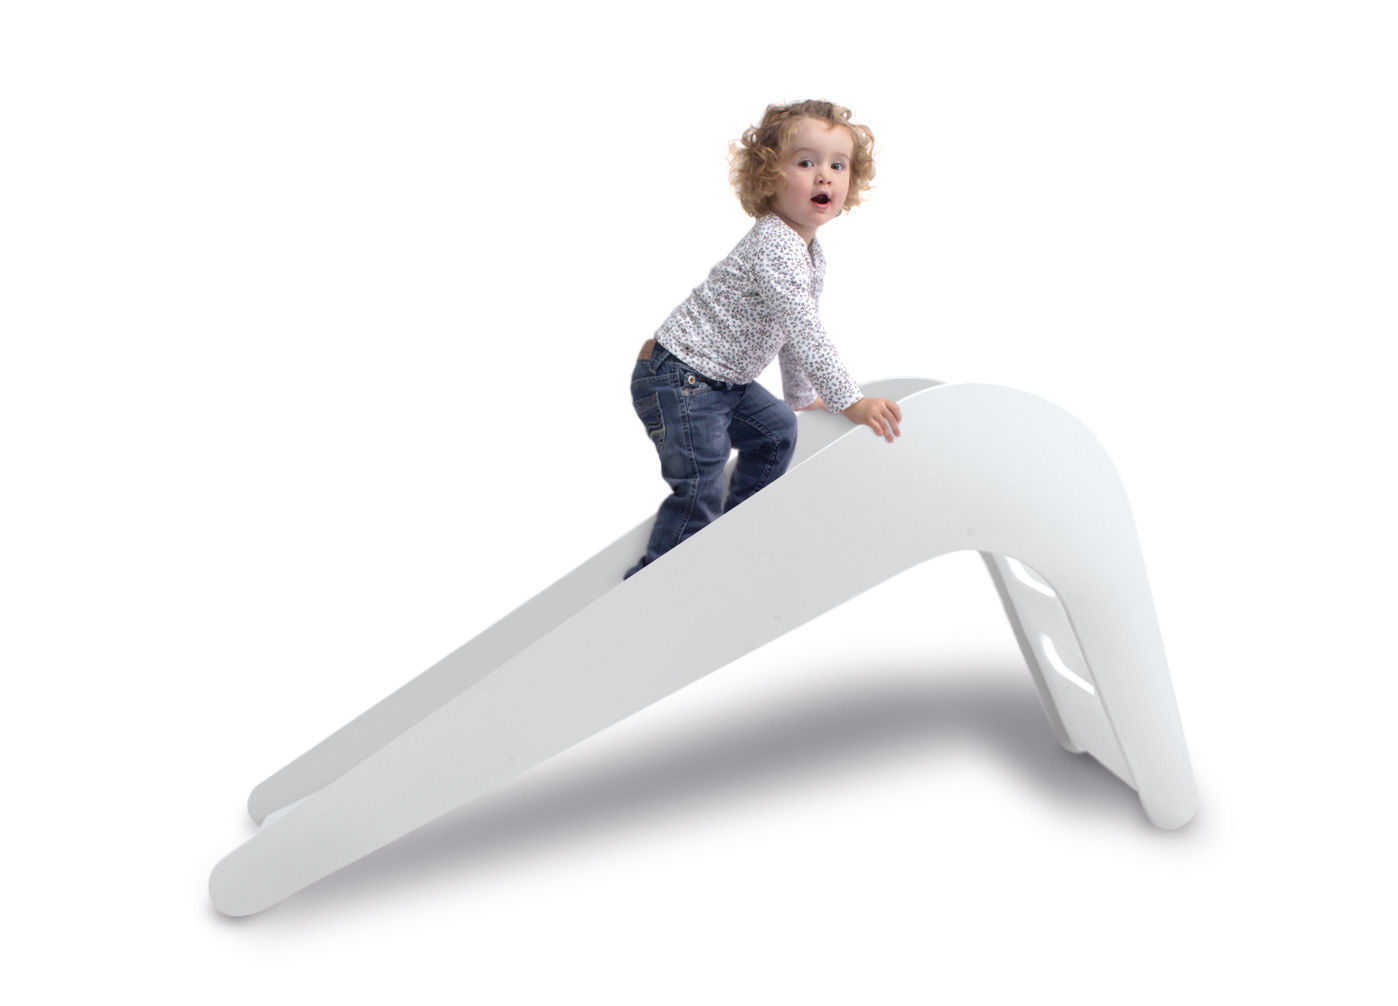 Jupiduu Kinderrutsche "White Elephant" , Jupiduu - Designed for Kids Jupiduu - Designed for Kids غرفة الاطفال ألعاب